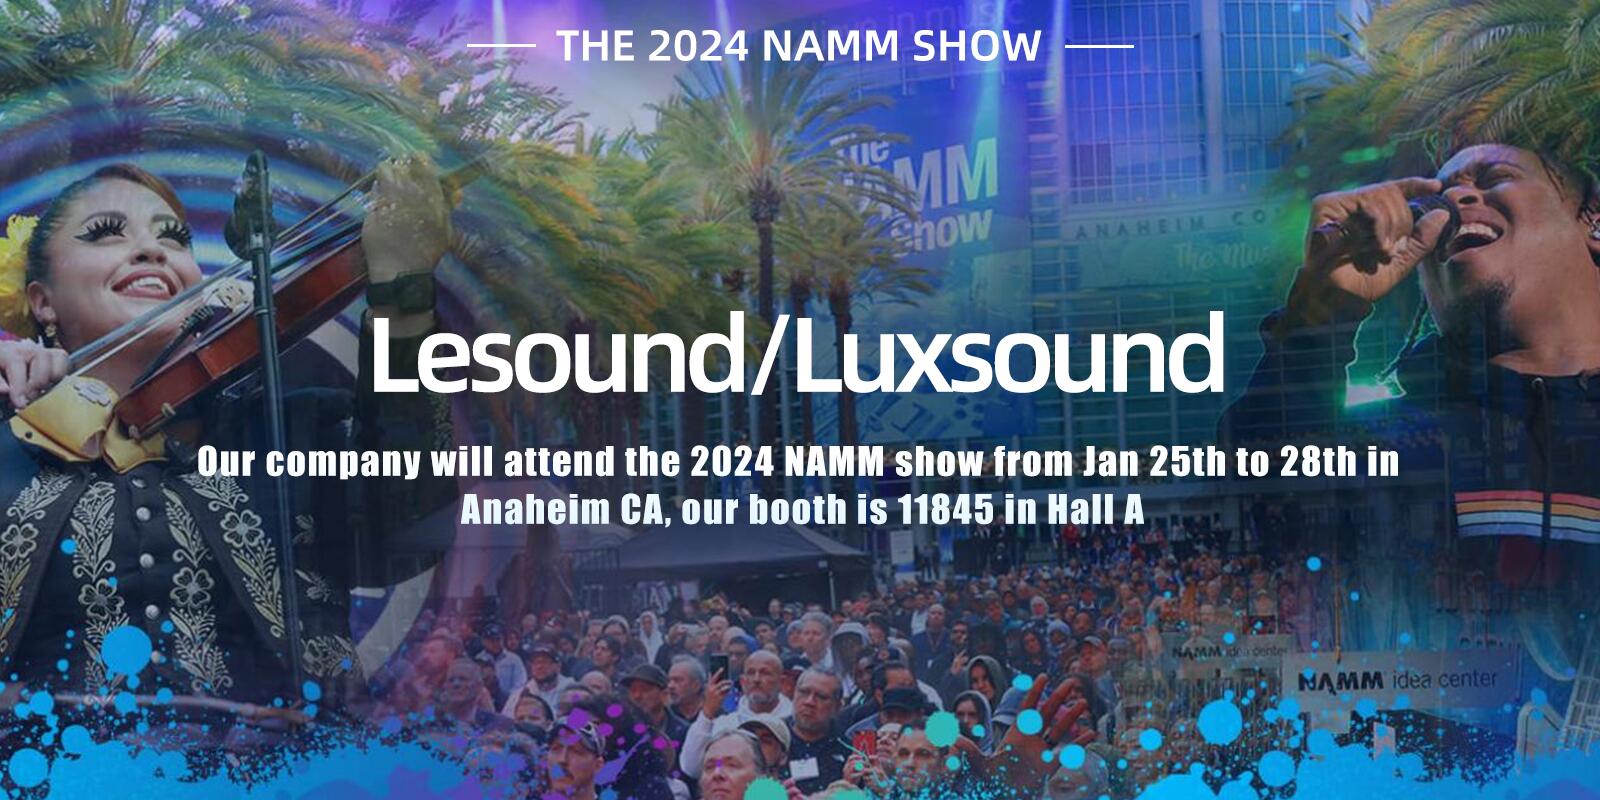 A Lesound/Luxsound részt vesz a 2024-es NAMM Show-n január 25. és 28. között Anaheim CA-ban